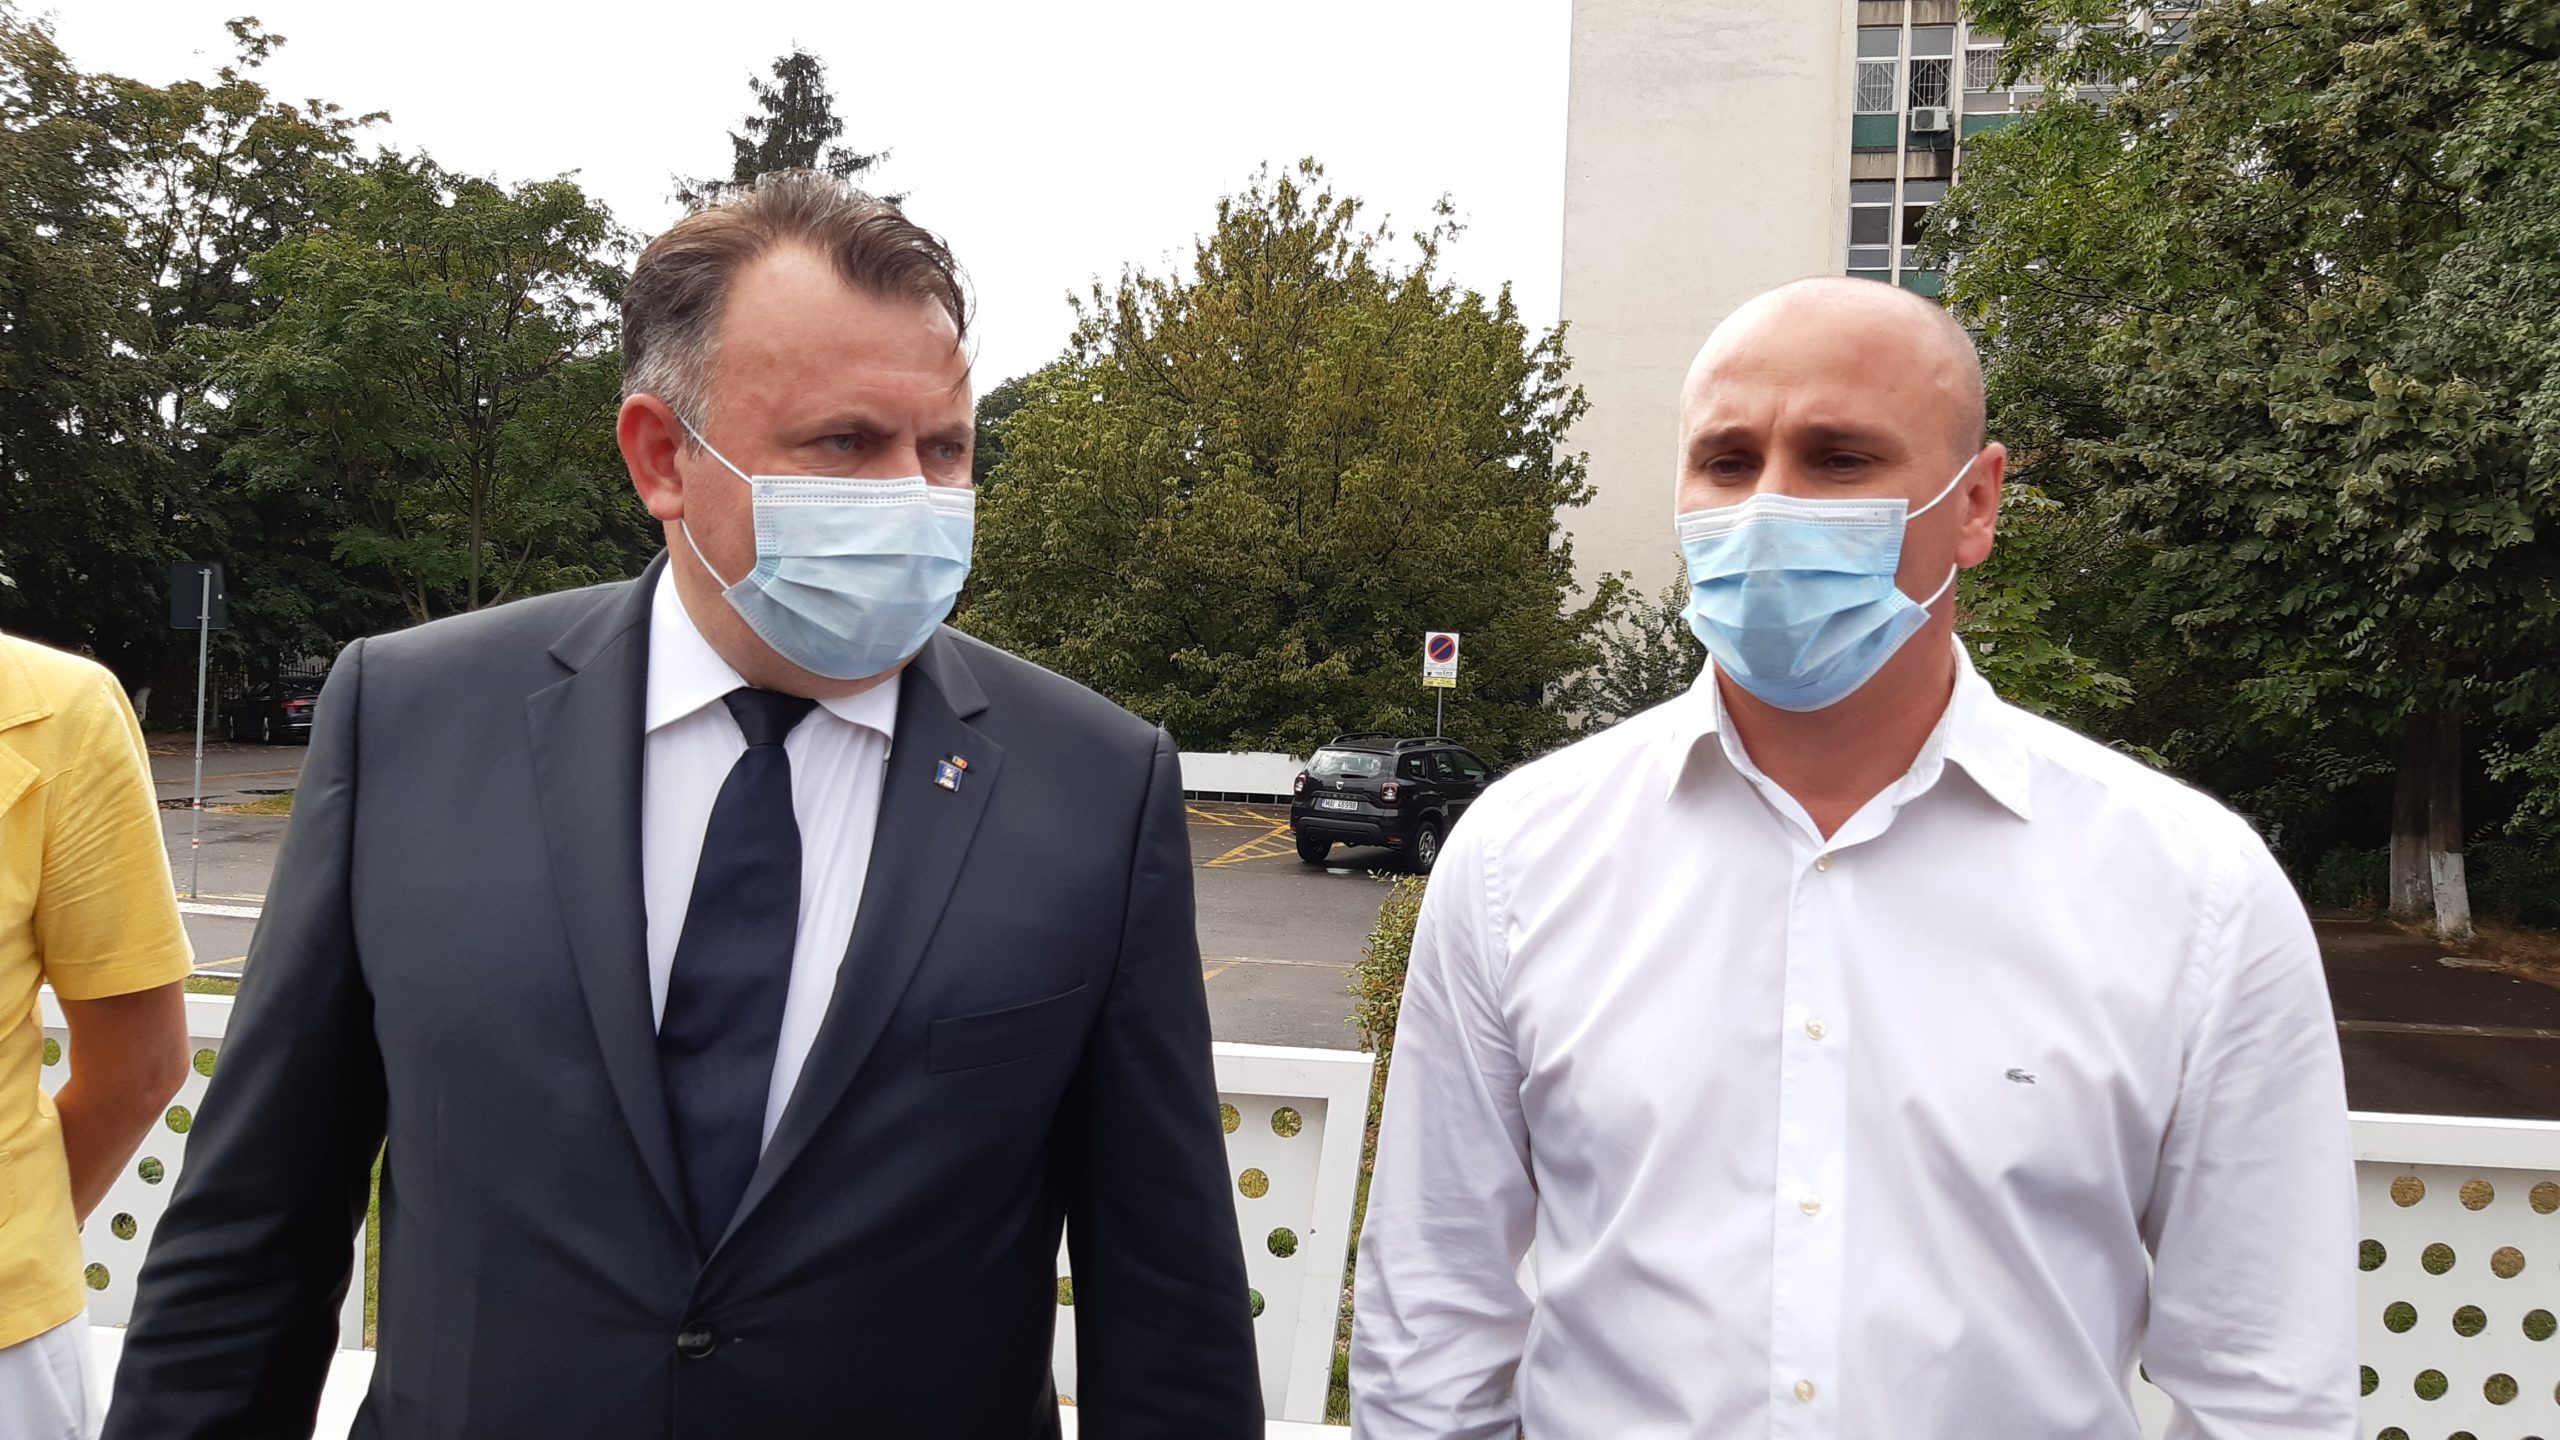 FOTO: Declarații făcute presei de ministrul Nelu Tătaru, după vizita-fulger la Spitalul Municipal Oradea 18.08.2020